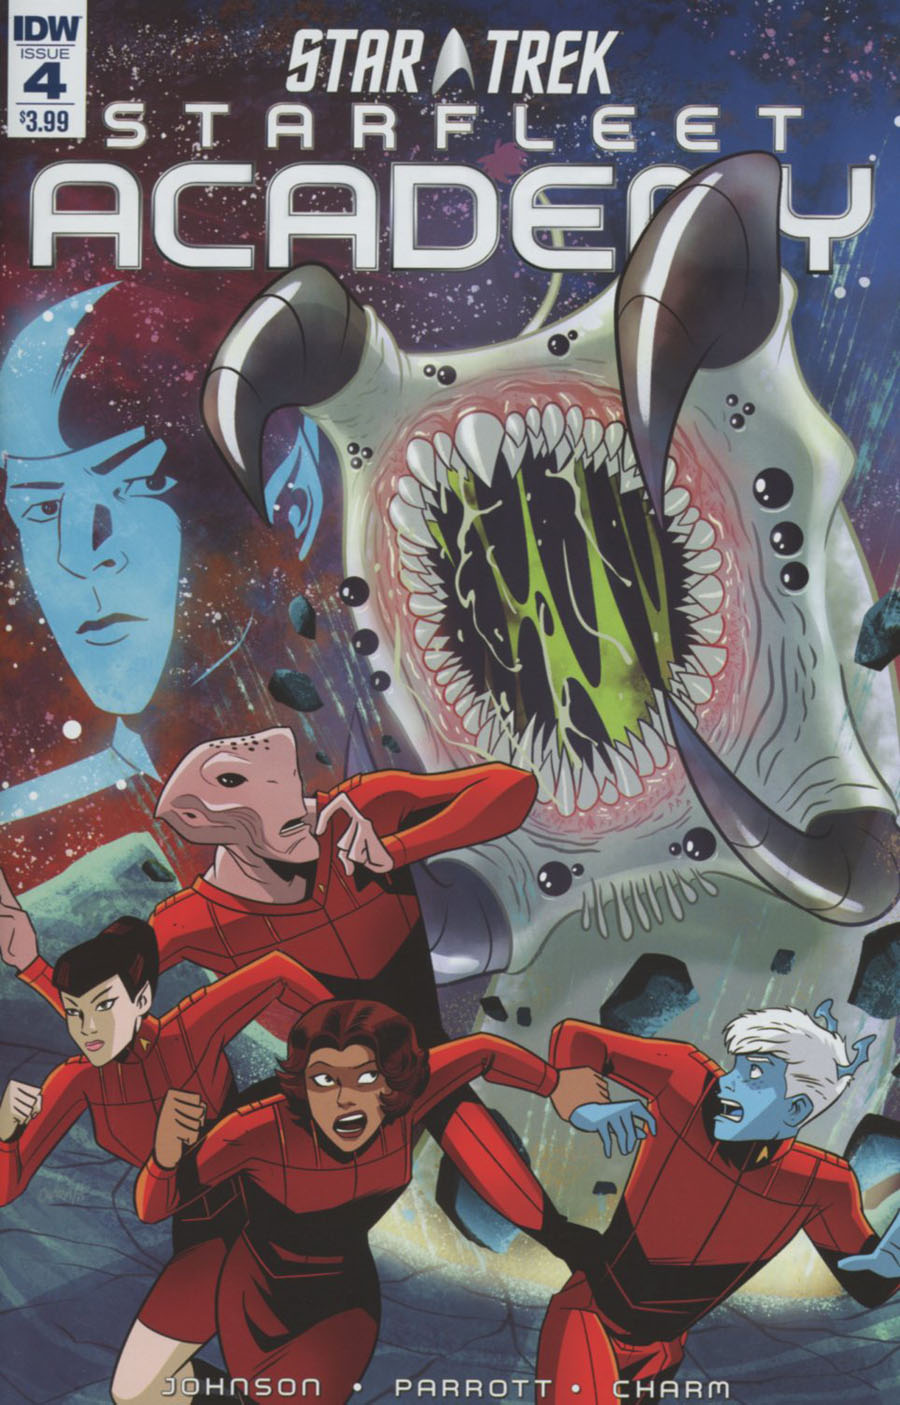 Star Trek Starfleet Academy (IDW) #4 Cover A Regular Derek Charm Cover